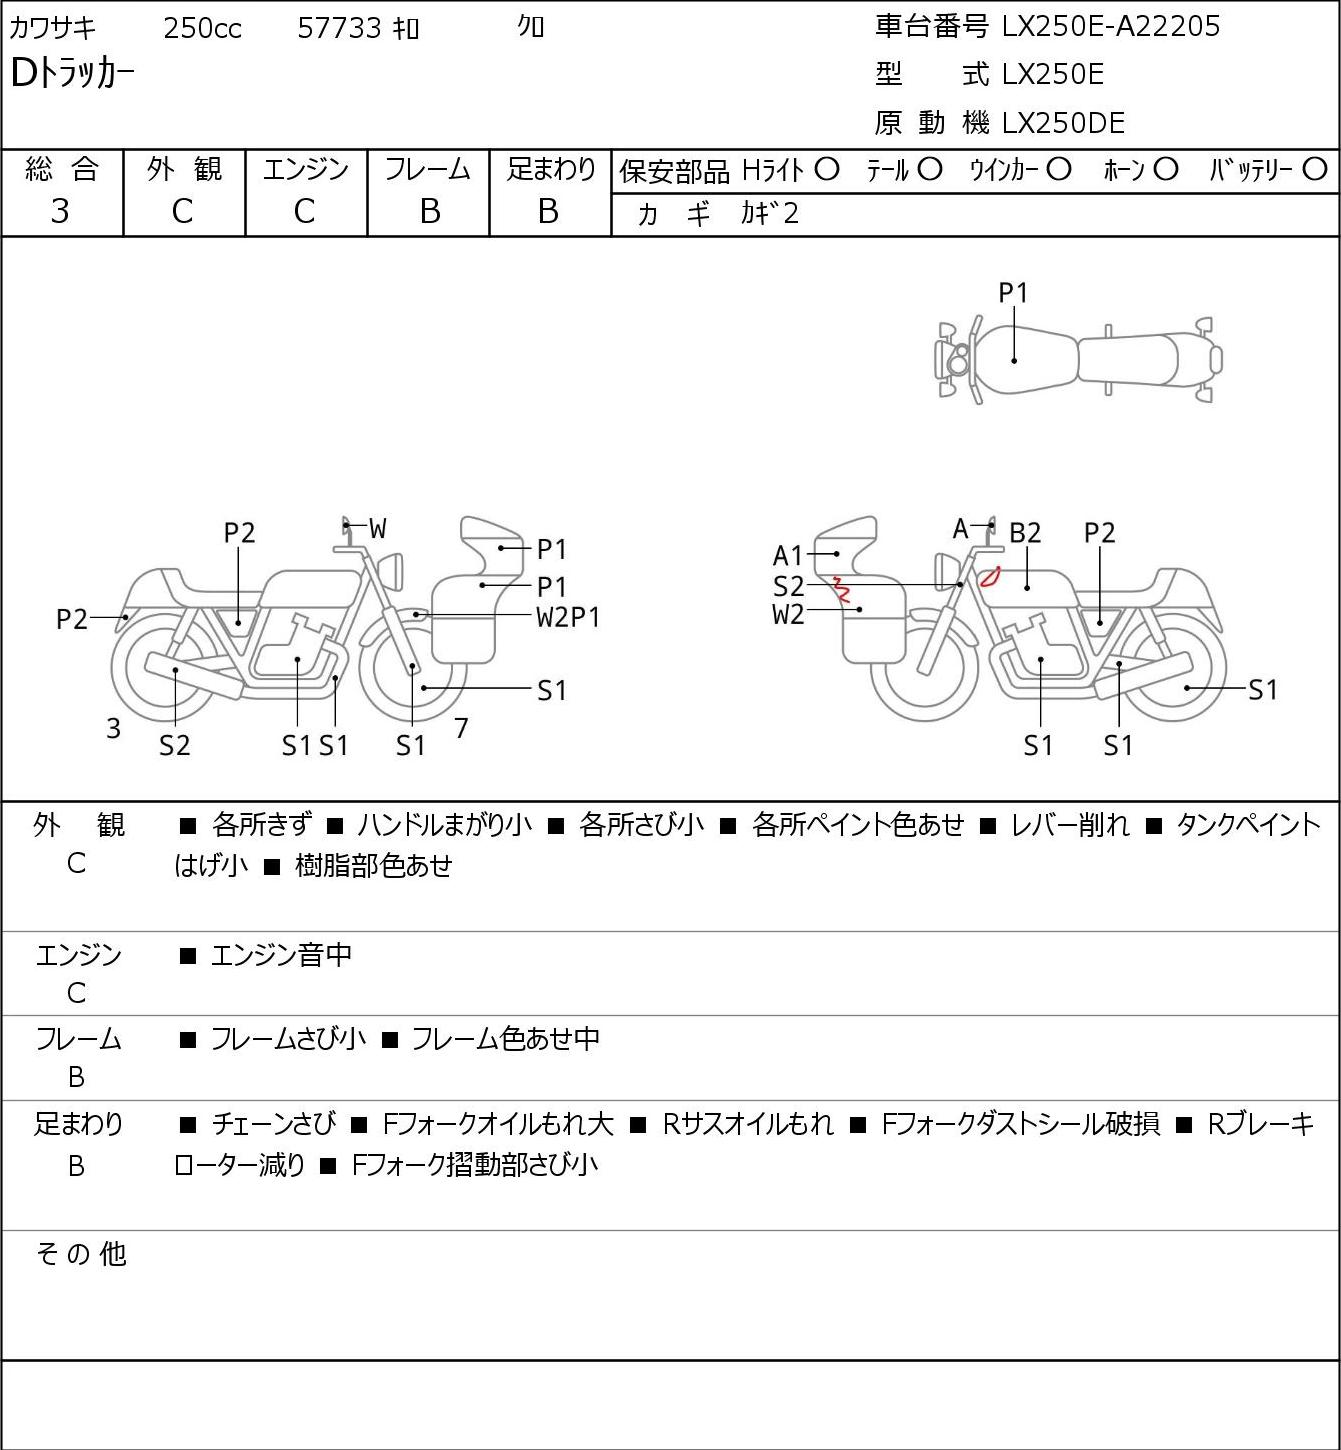 Kawasaki D-TRACKER LX250E - купить недорого